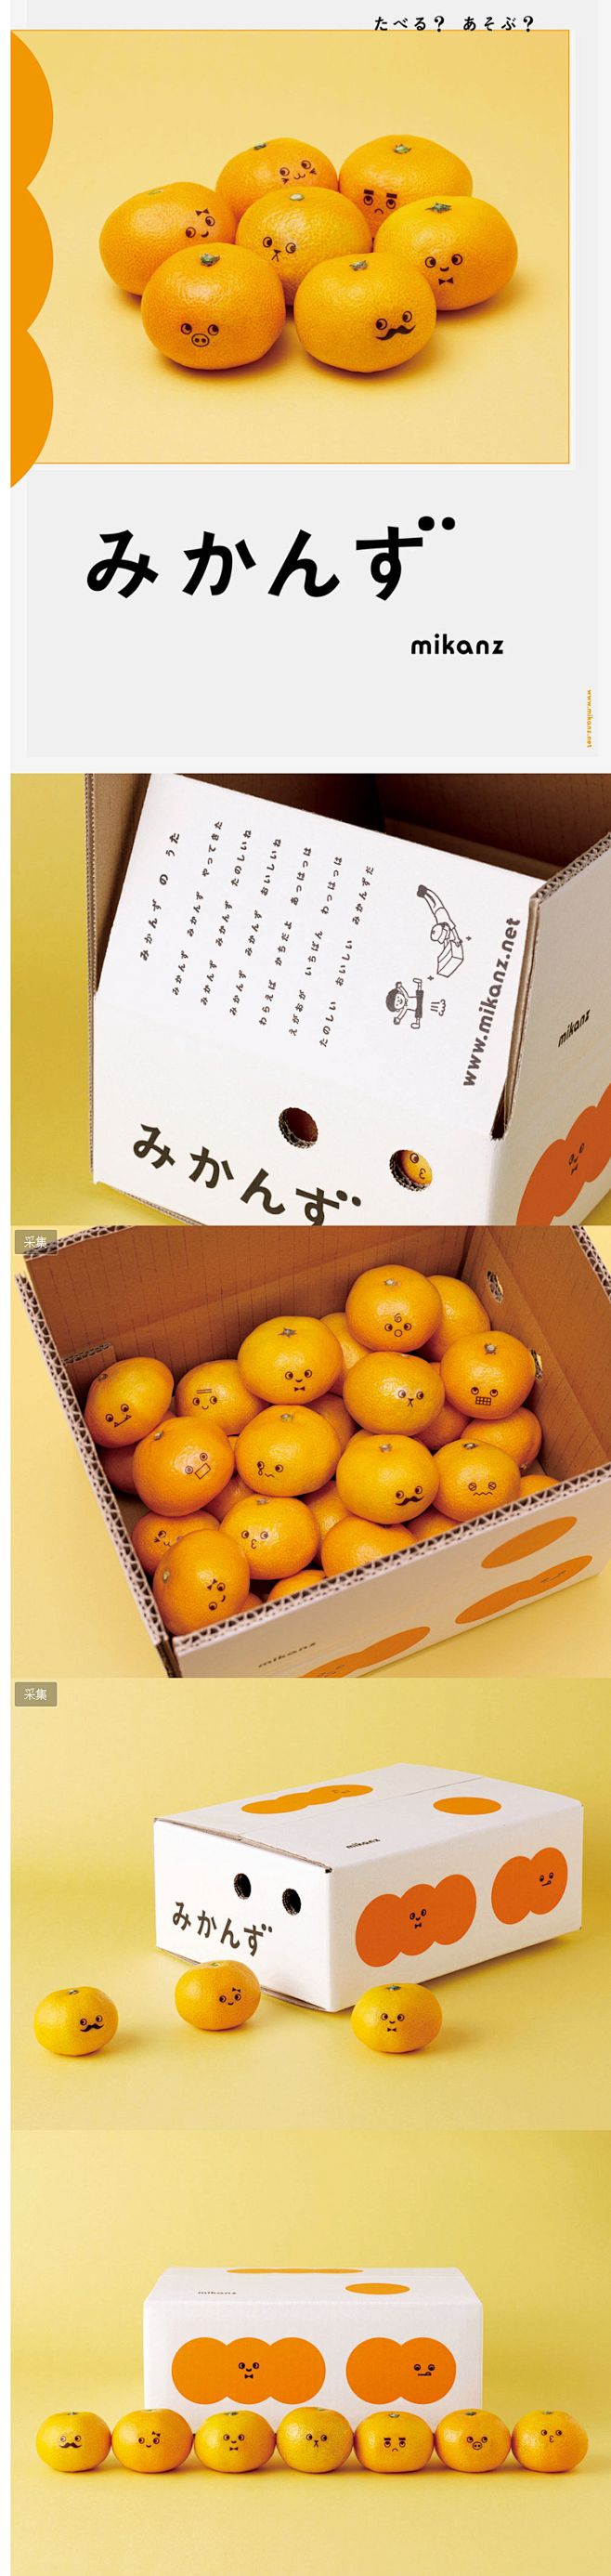 日本卖萌的橘子包装